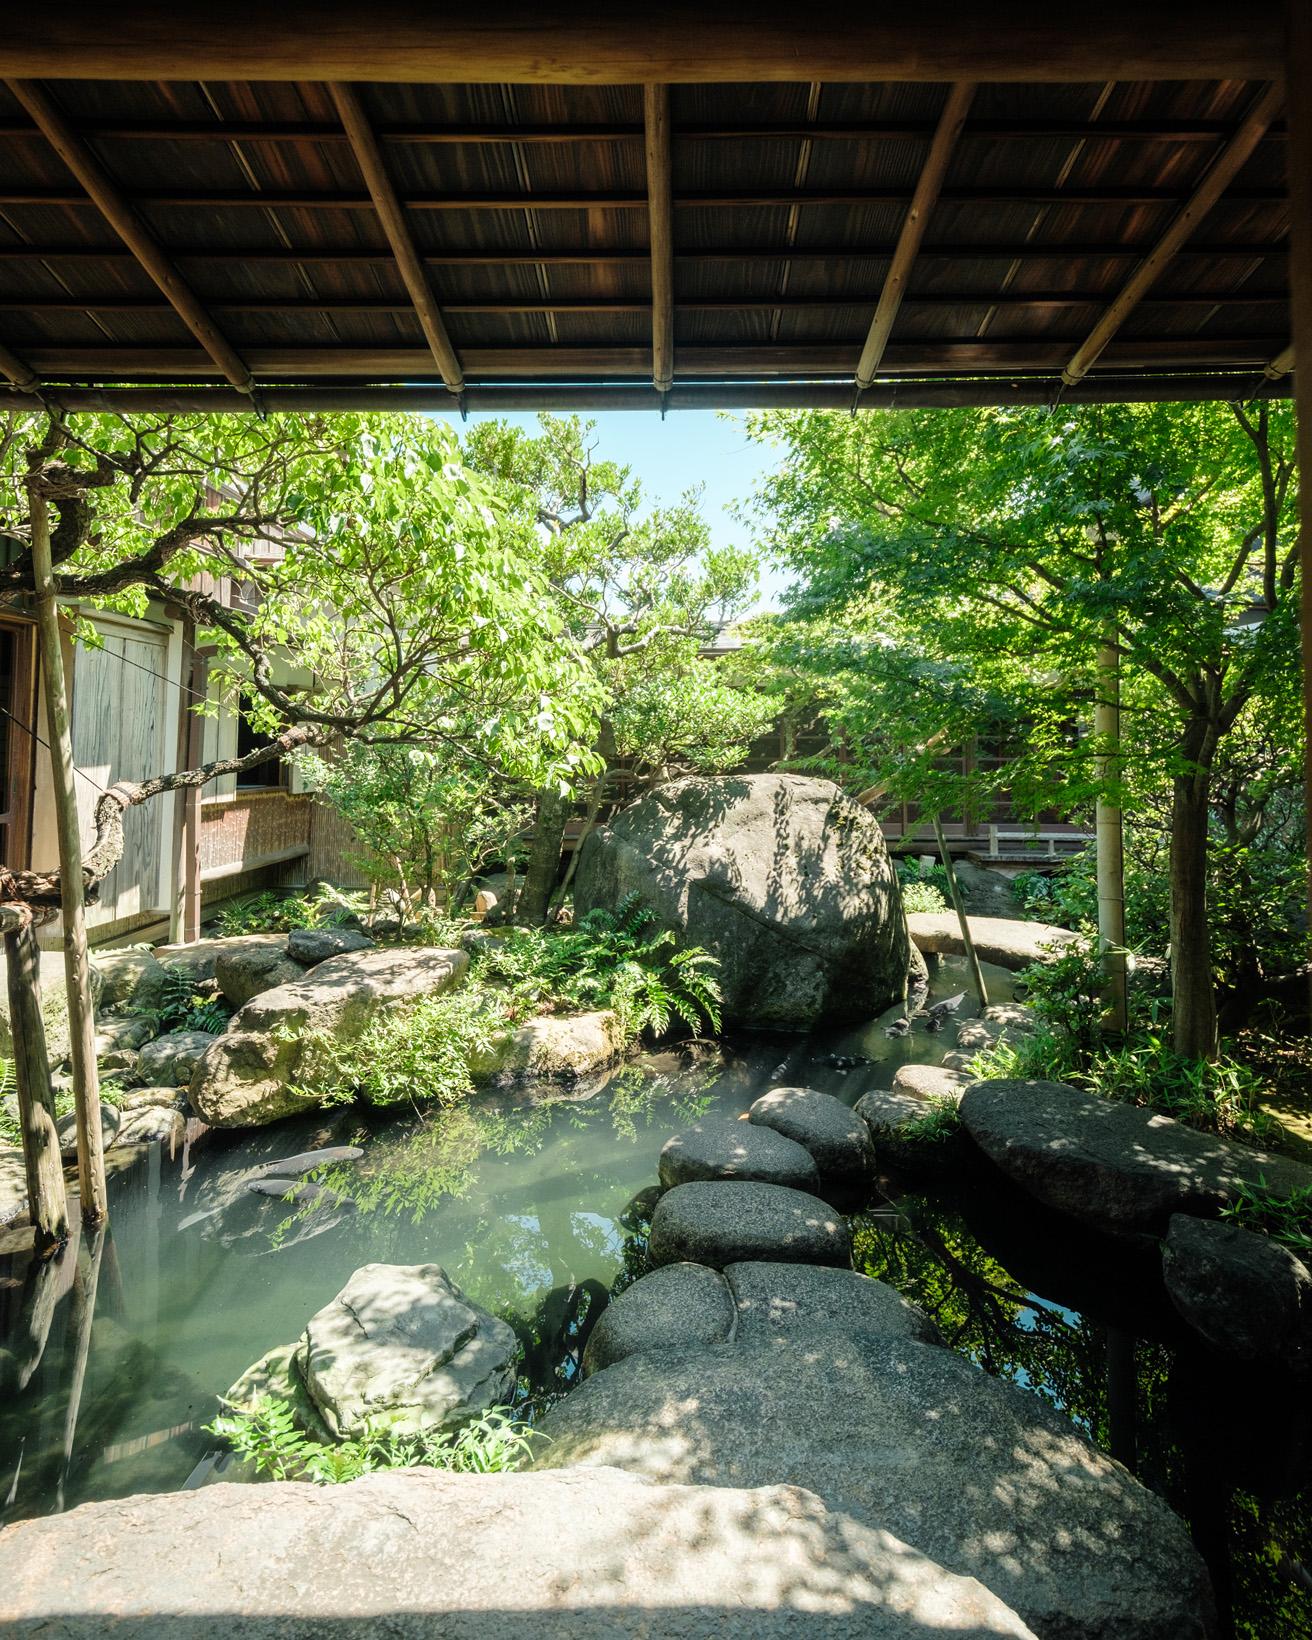 居住棟から眺める中庭の五典の池。「仁・義・礼・智・信」の五常を造形化した巨石を配し、朝倉は自身の自己反省の場として設計した。